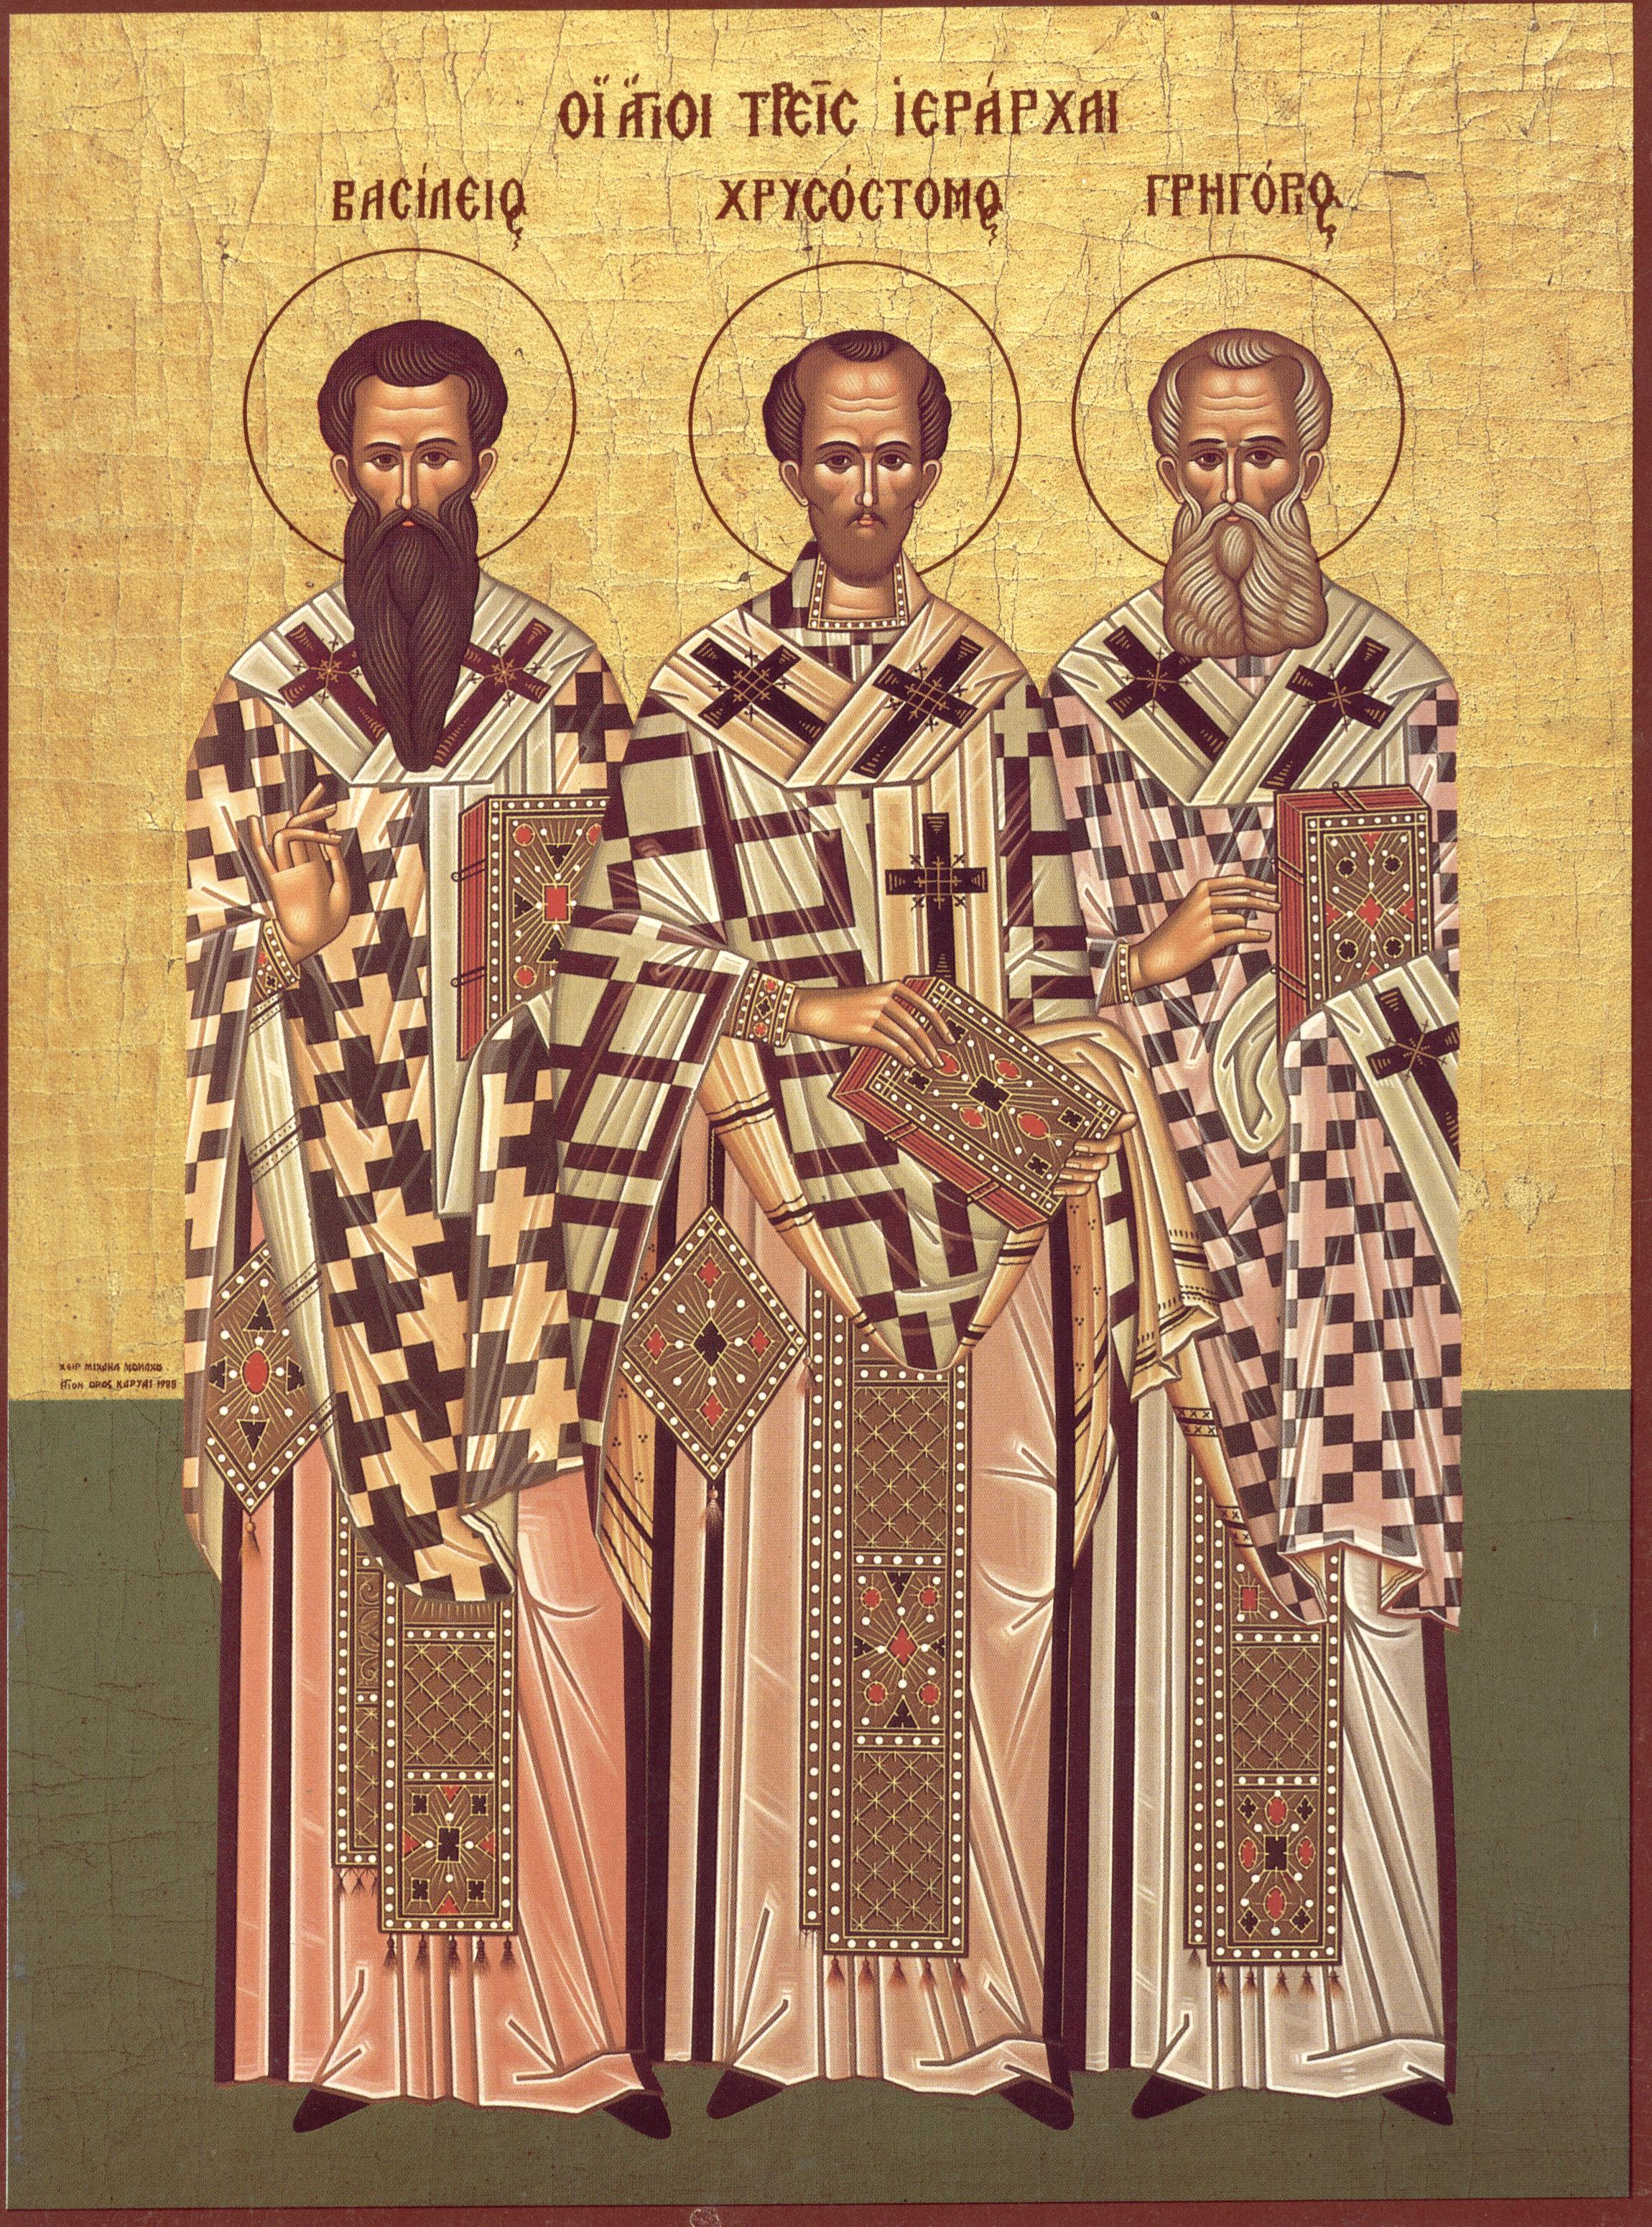 Saints épiscopes Basile de Césarée,  Jean Chrysostome et Grégoire de Nazianze.